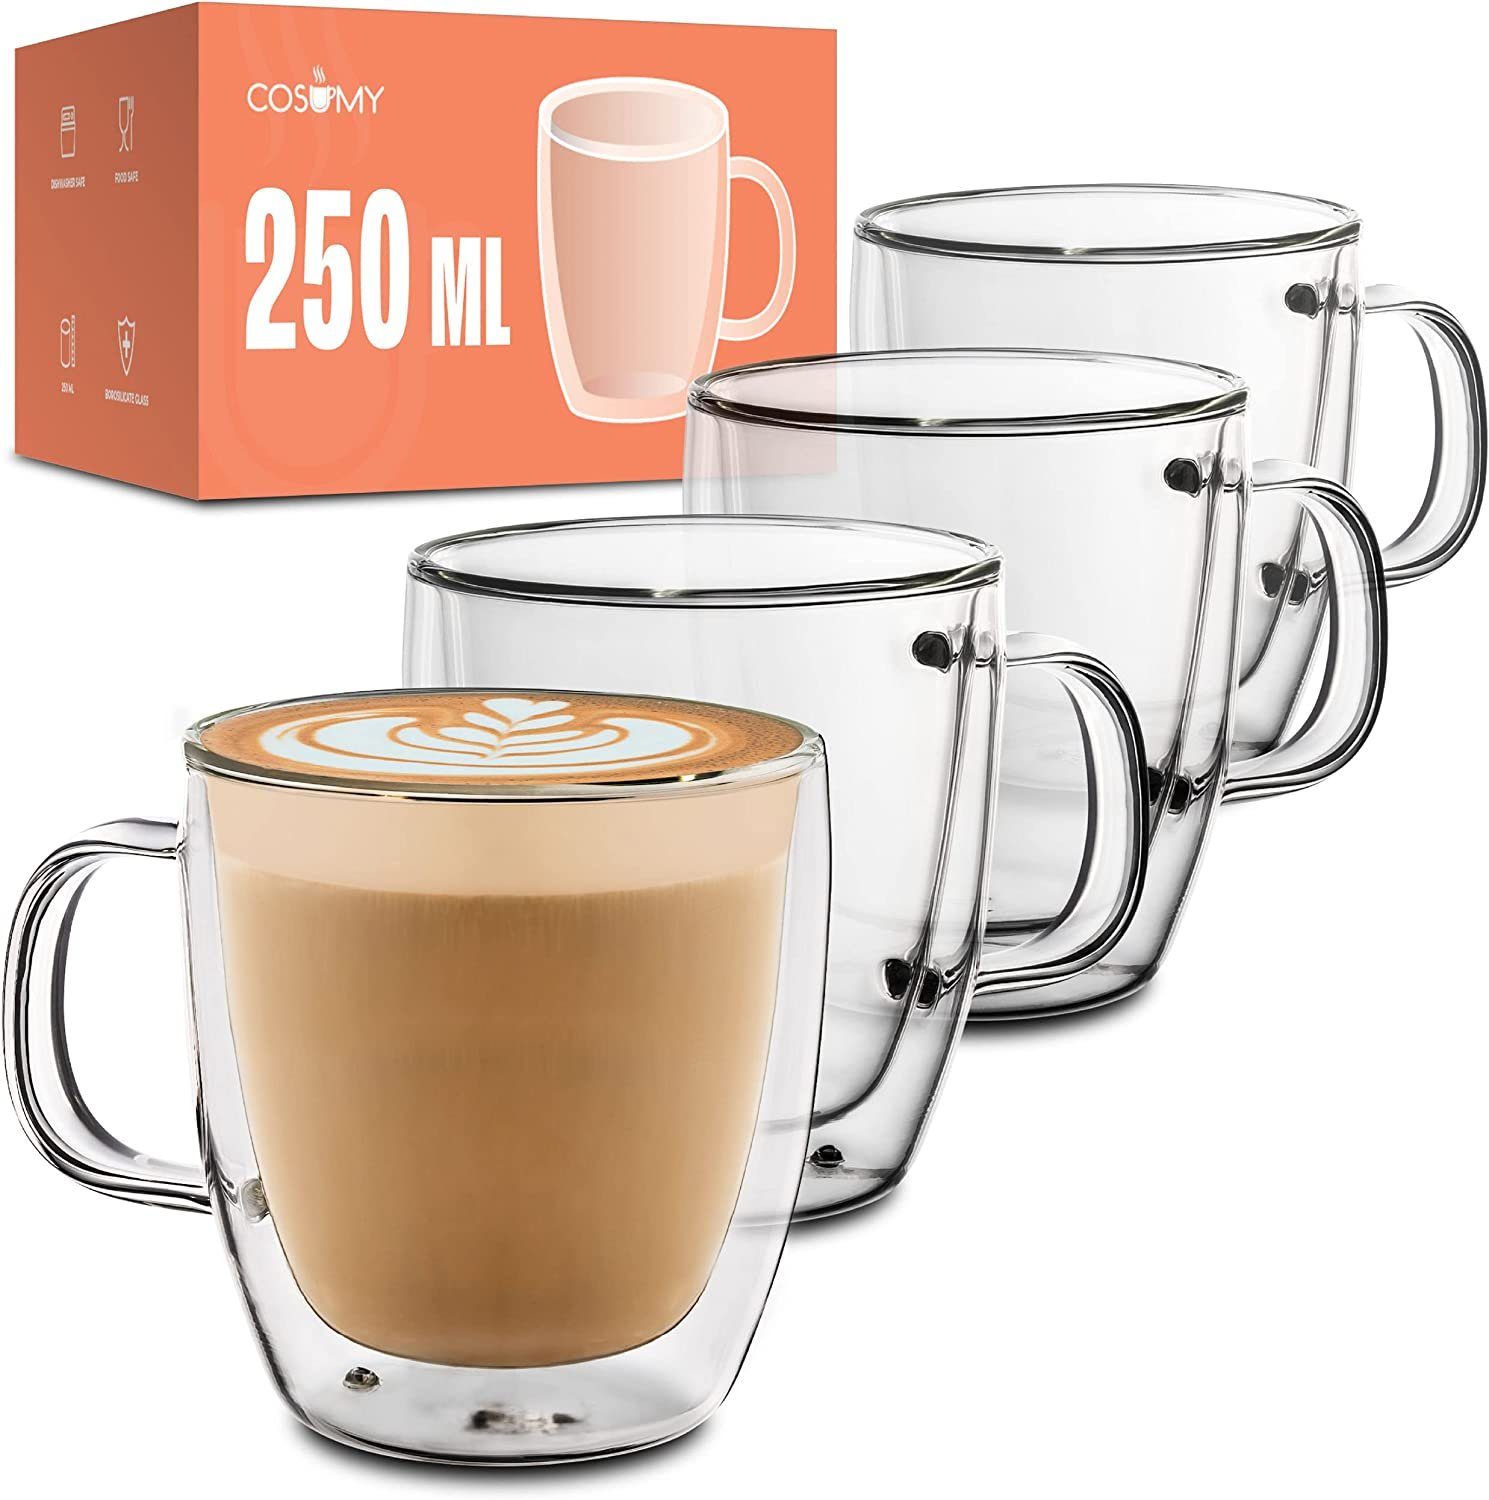 Cosumy Gläser-Set 4 Cappuccino Gläser mit Henkel doppelwandig, Glas, 4er Set - Lange Wärmehaltung - Kaffee, Cappuccino und Tee